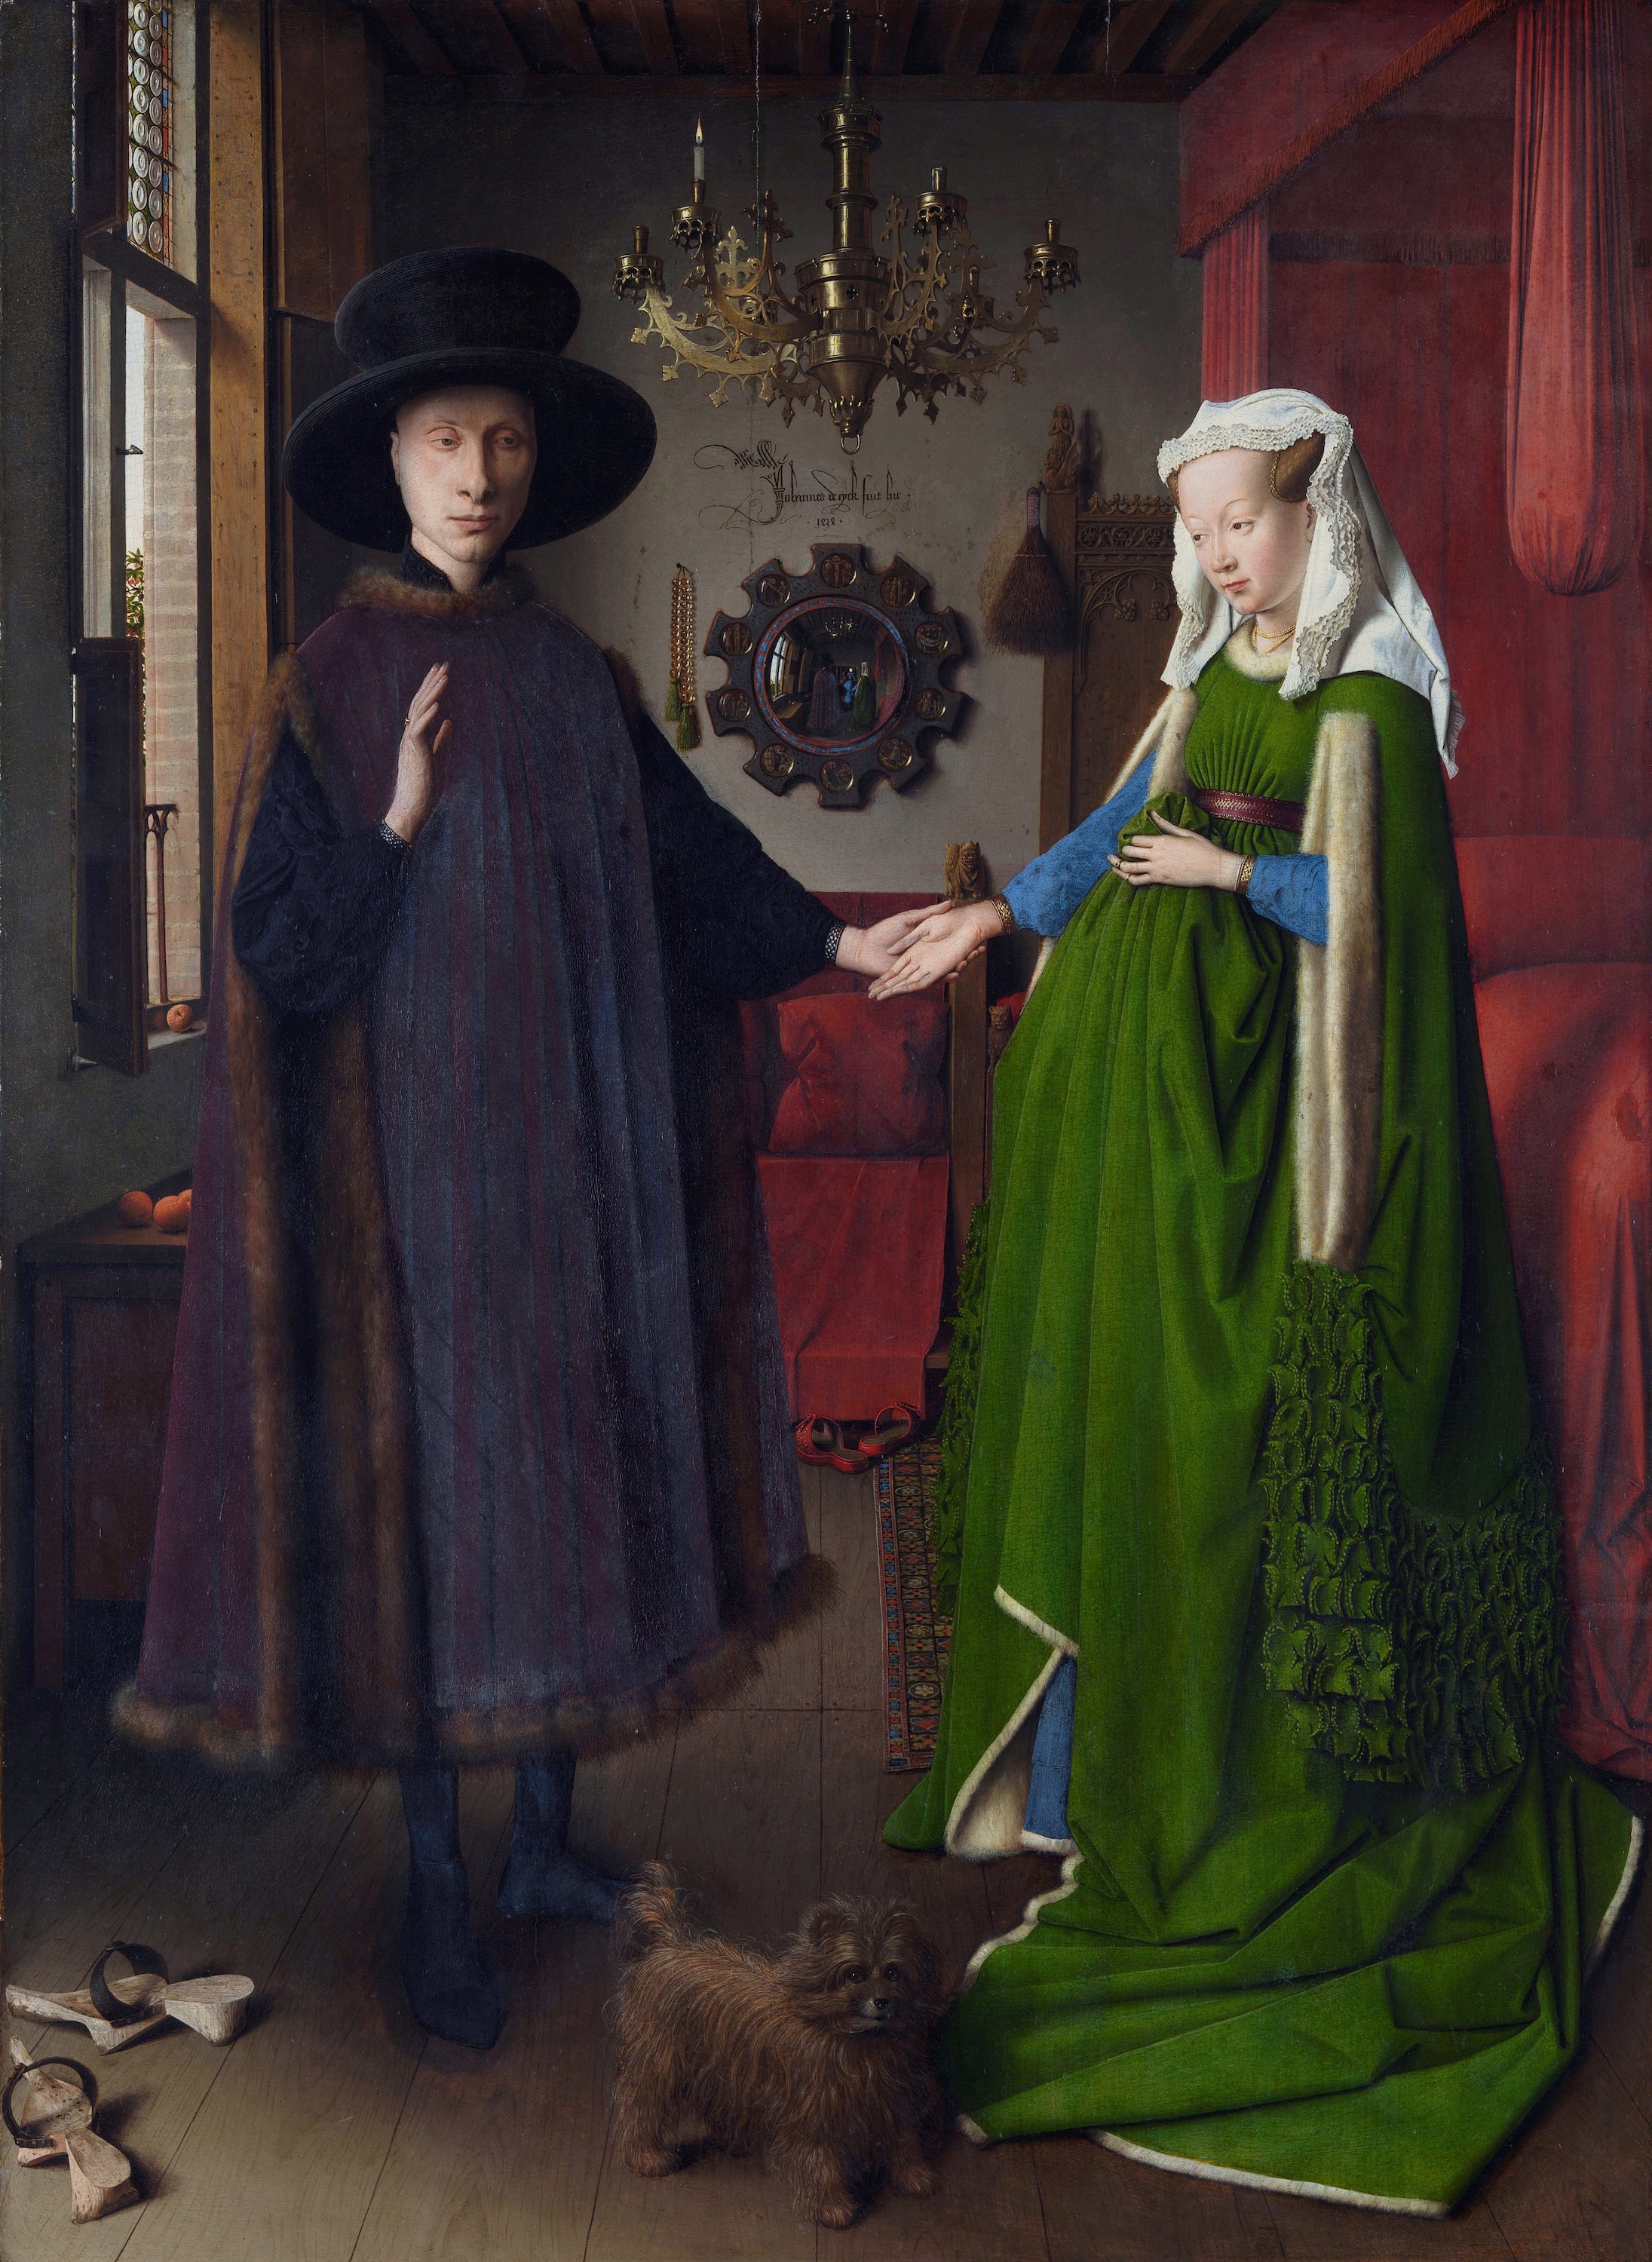 阿諾菲尼肖像 by Jan van Eyck - 1434 - 82 x 60 cm 